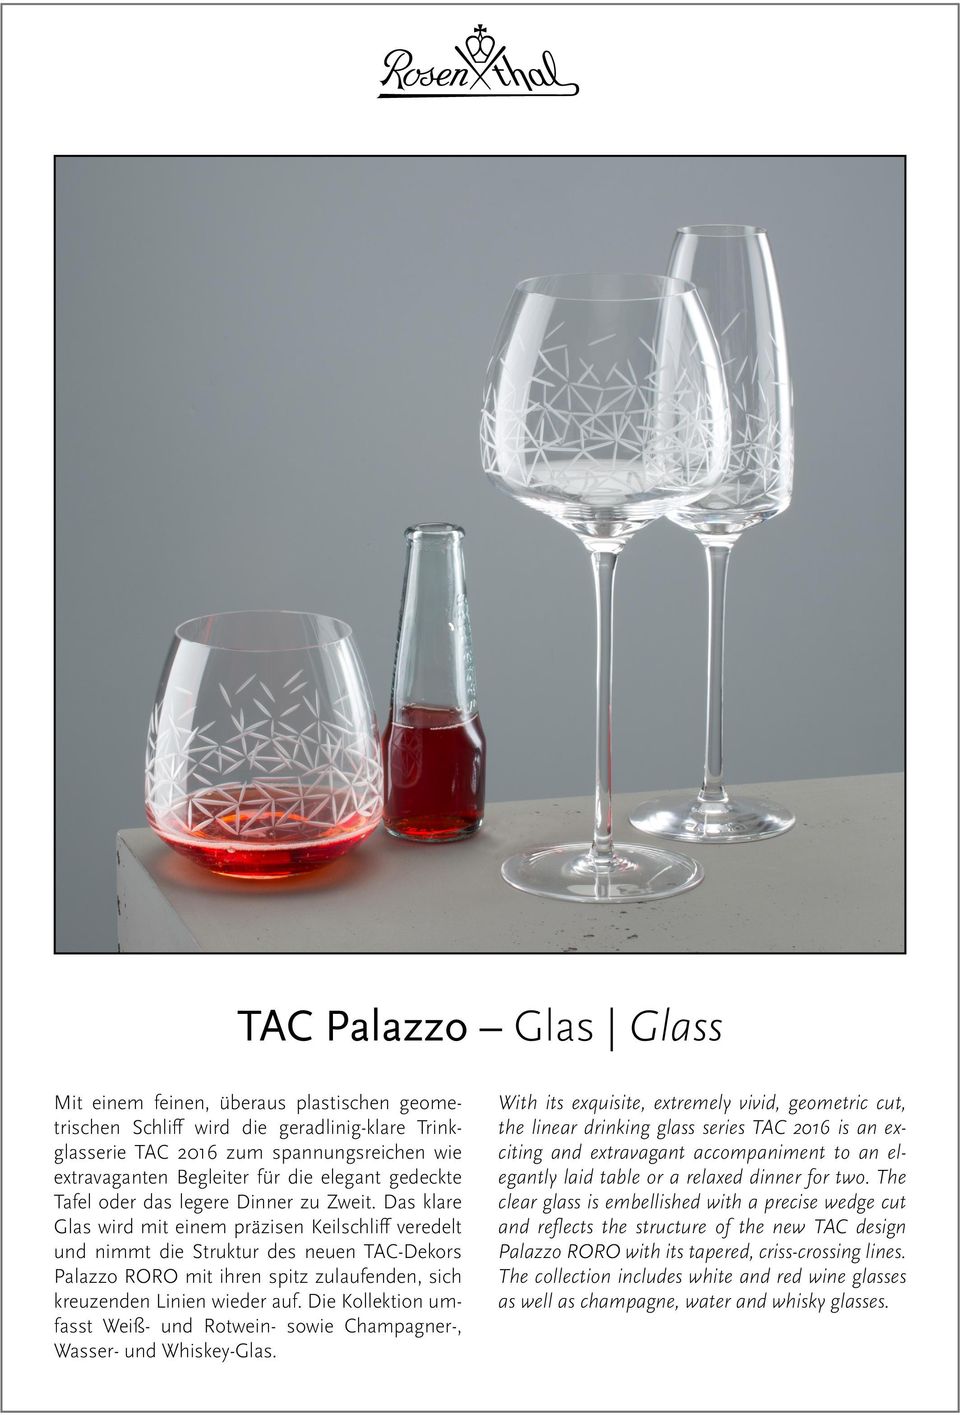 Das klare Glas wird mit einem präzisen Keilschliff veredelt und nimmt die Struktur des neuen TAC-Dekors Palazzo RORO mit ihren spitz zulaufenden, sich kreuzenden Linien wieder auf.